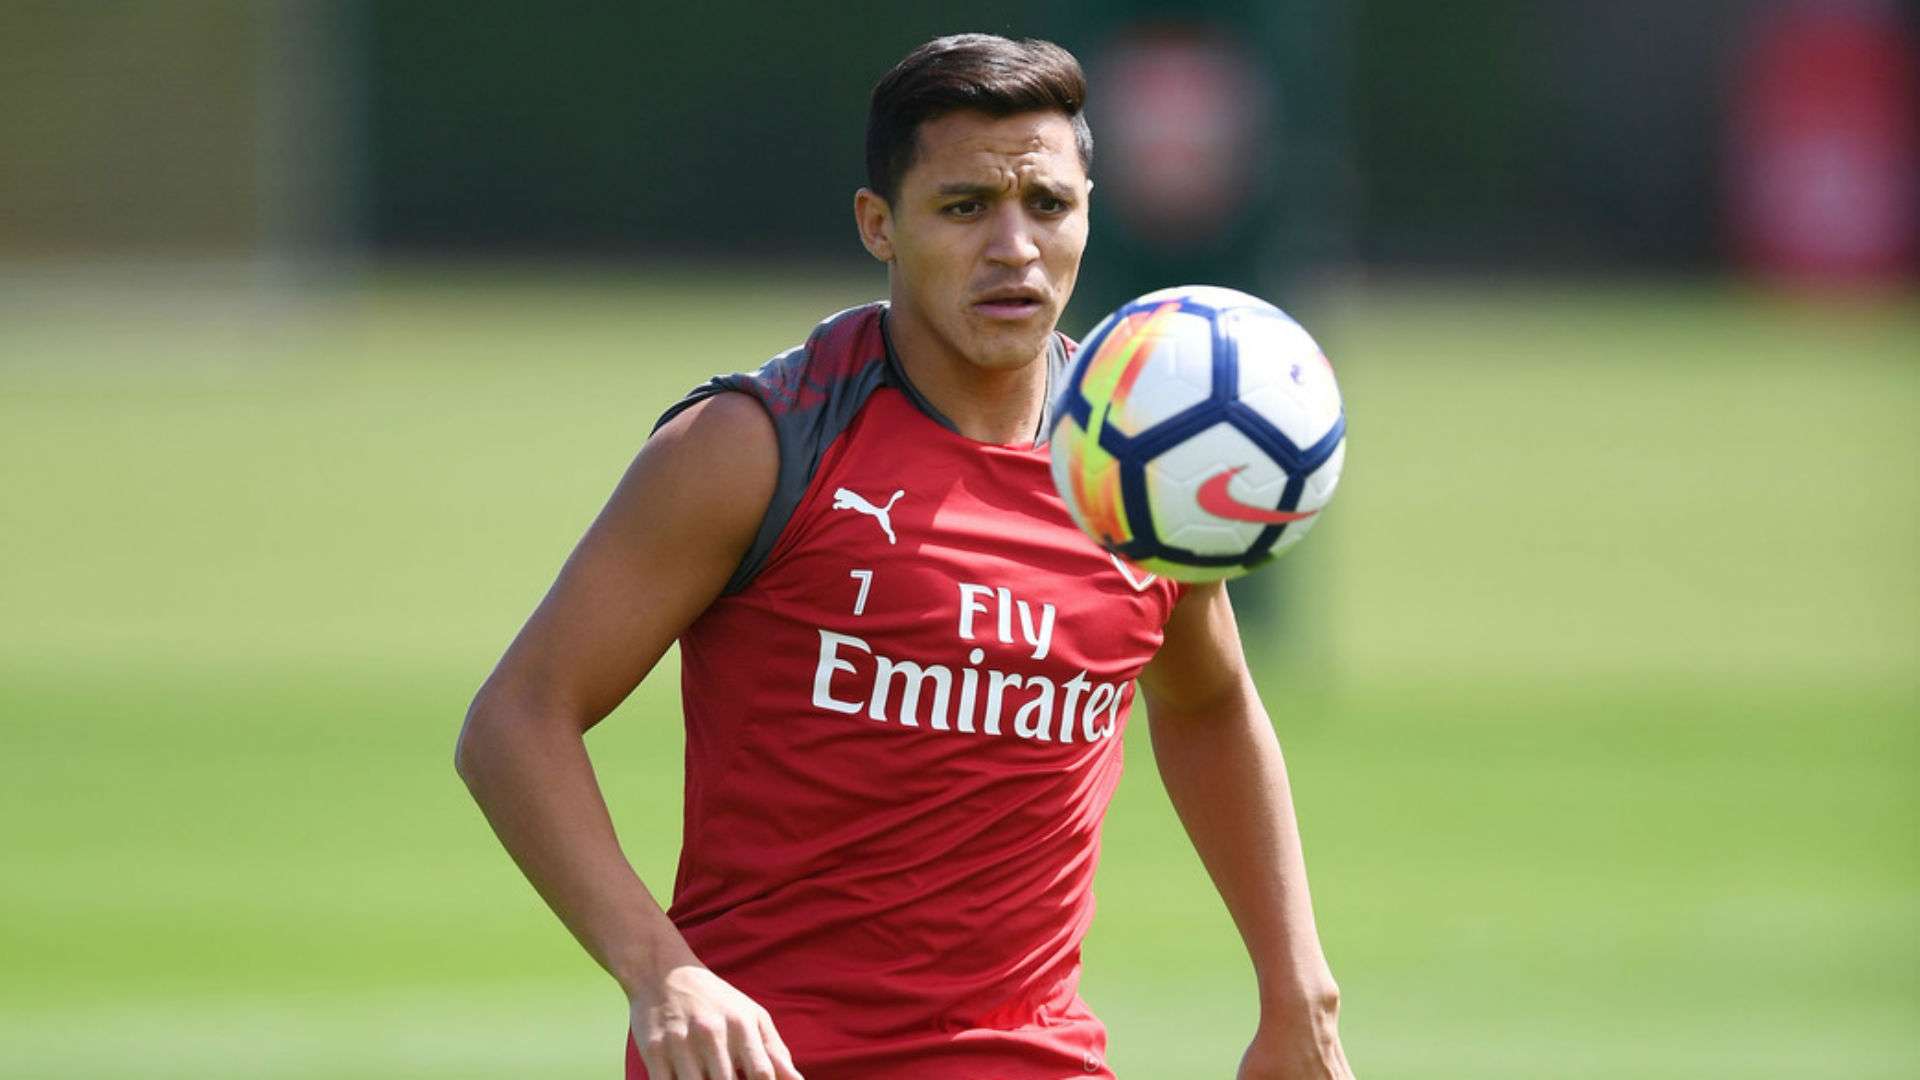 Primer entrenamiento de Alexis Sánchez en Arsenal 01082017